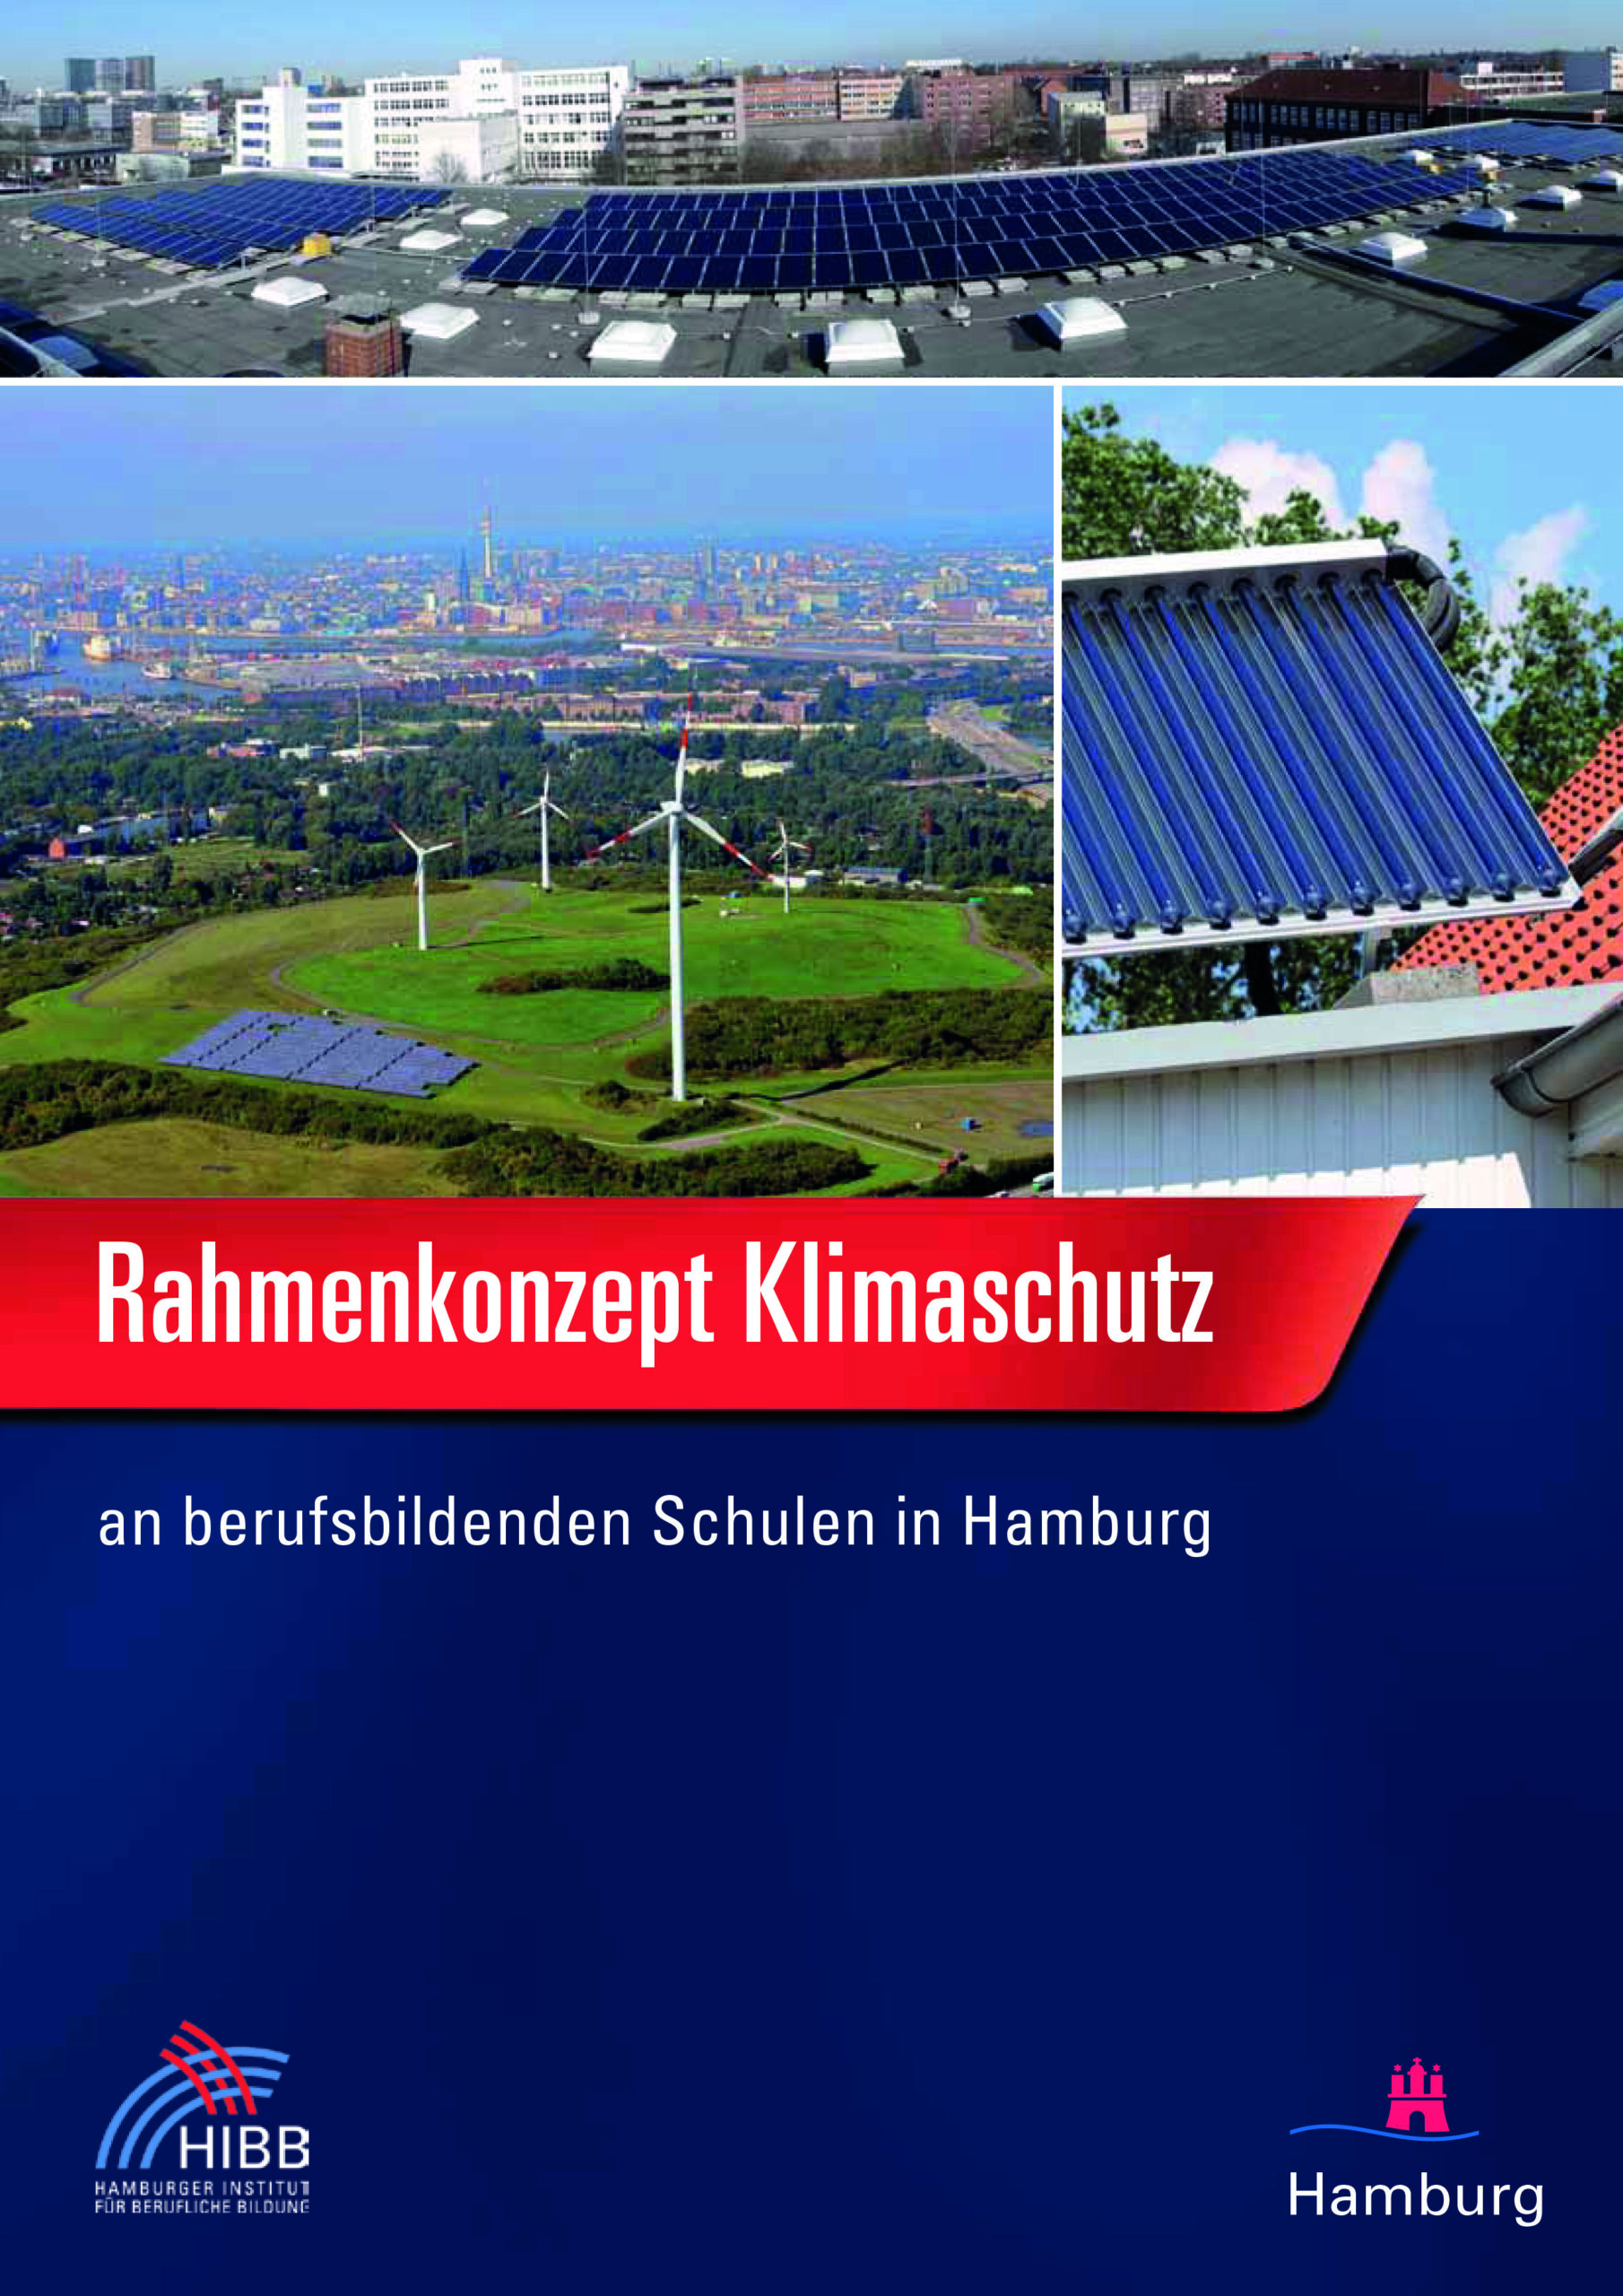 Das Bild zeigt die Titelseite der Broschüre. Ganz oben zeigt ein Foto ein Häuserdach mit einer großen Solaranlage, dahinter sieht man im Hintergrund eine Stadtansicht mit mehreren ca. 5-stöckigen Häusern. Darunter sind 2 weitere Fotos. Das linke zeigt eine Windkraftanlage vor einer Stadtansicht. Das rechte kleinere Bild zeigt ausschnittsweise eine baue Energieanlage auf einen Dachteil. Darunter steht auf rotem Grund der Broschürentitel. Die untere Hälfte ist dunkelblau und zeigt en den beiden Ecken das HIBB-Logo und das Hamburg-Logo.